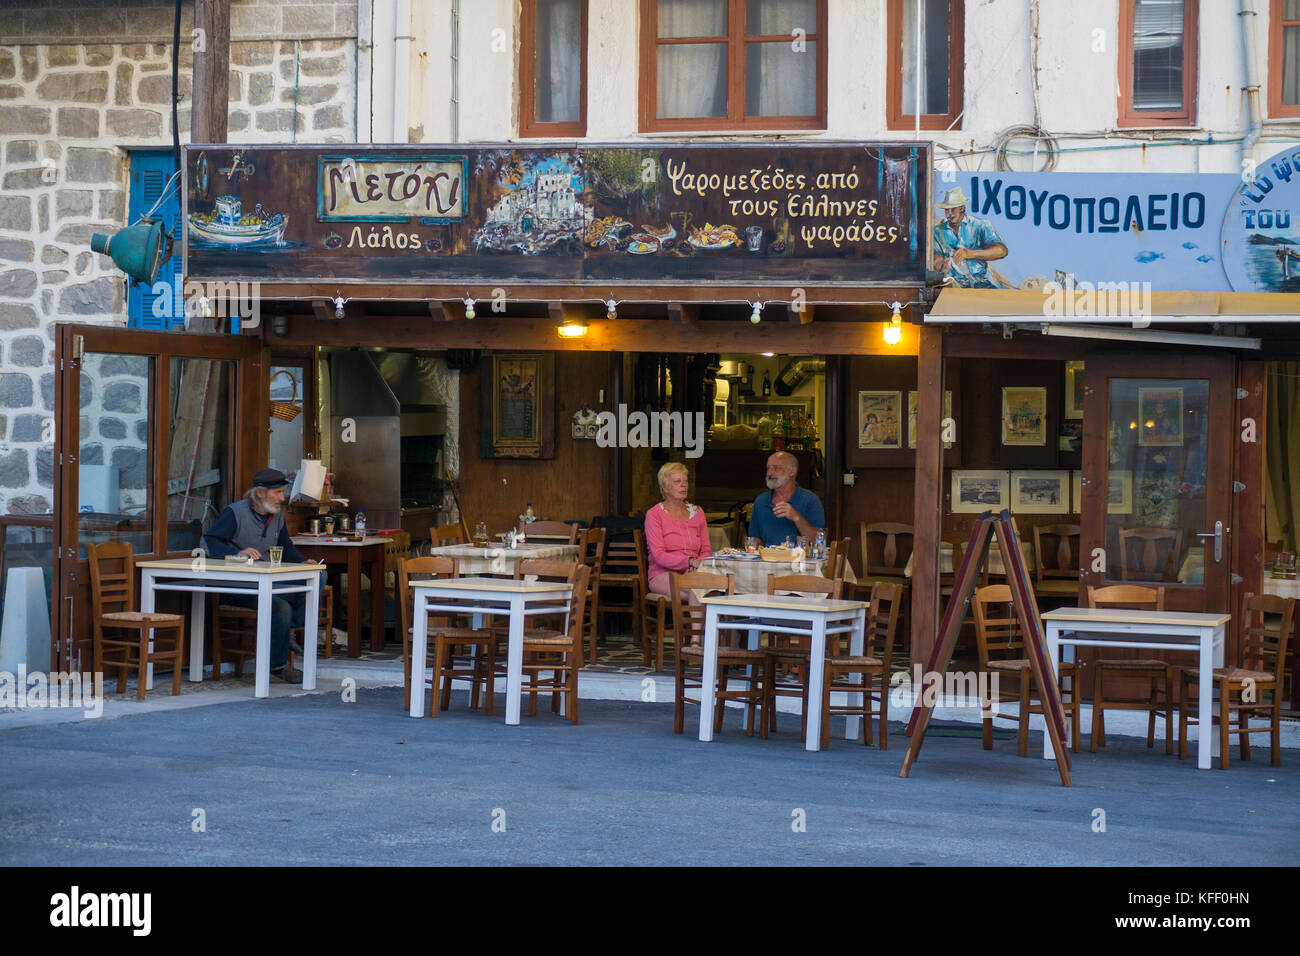 Taverne grecque typique à la ville de Naxos, l'île de Naxos, Cyclades, Mer Égée, Grèce Banque D'Images